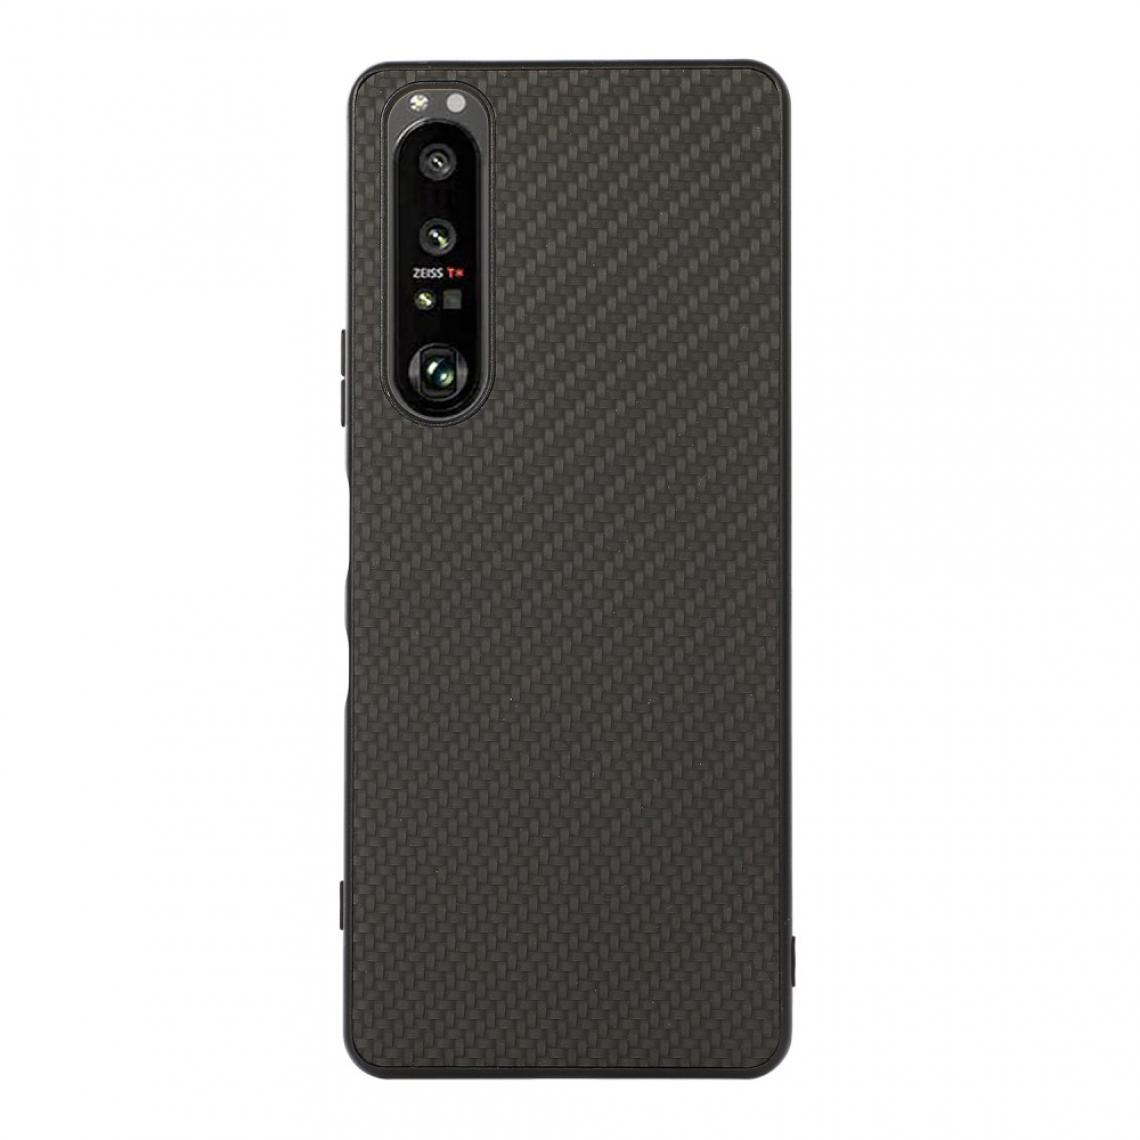 Other - Coque en TPU + PU Texture en fibre de carbone bien protégée noir pour votre Sony Xperia 1 III - Coque, étui smartphone